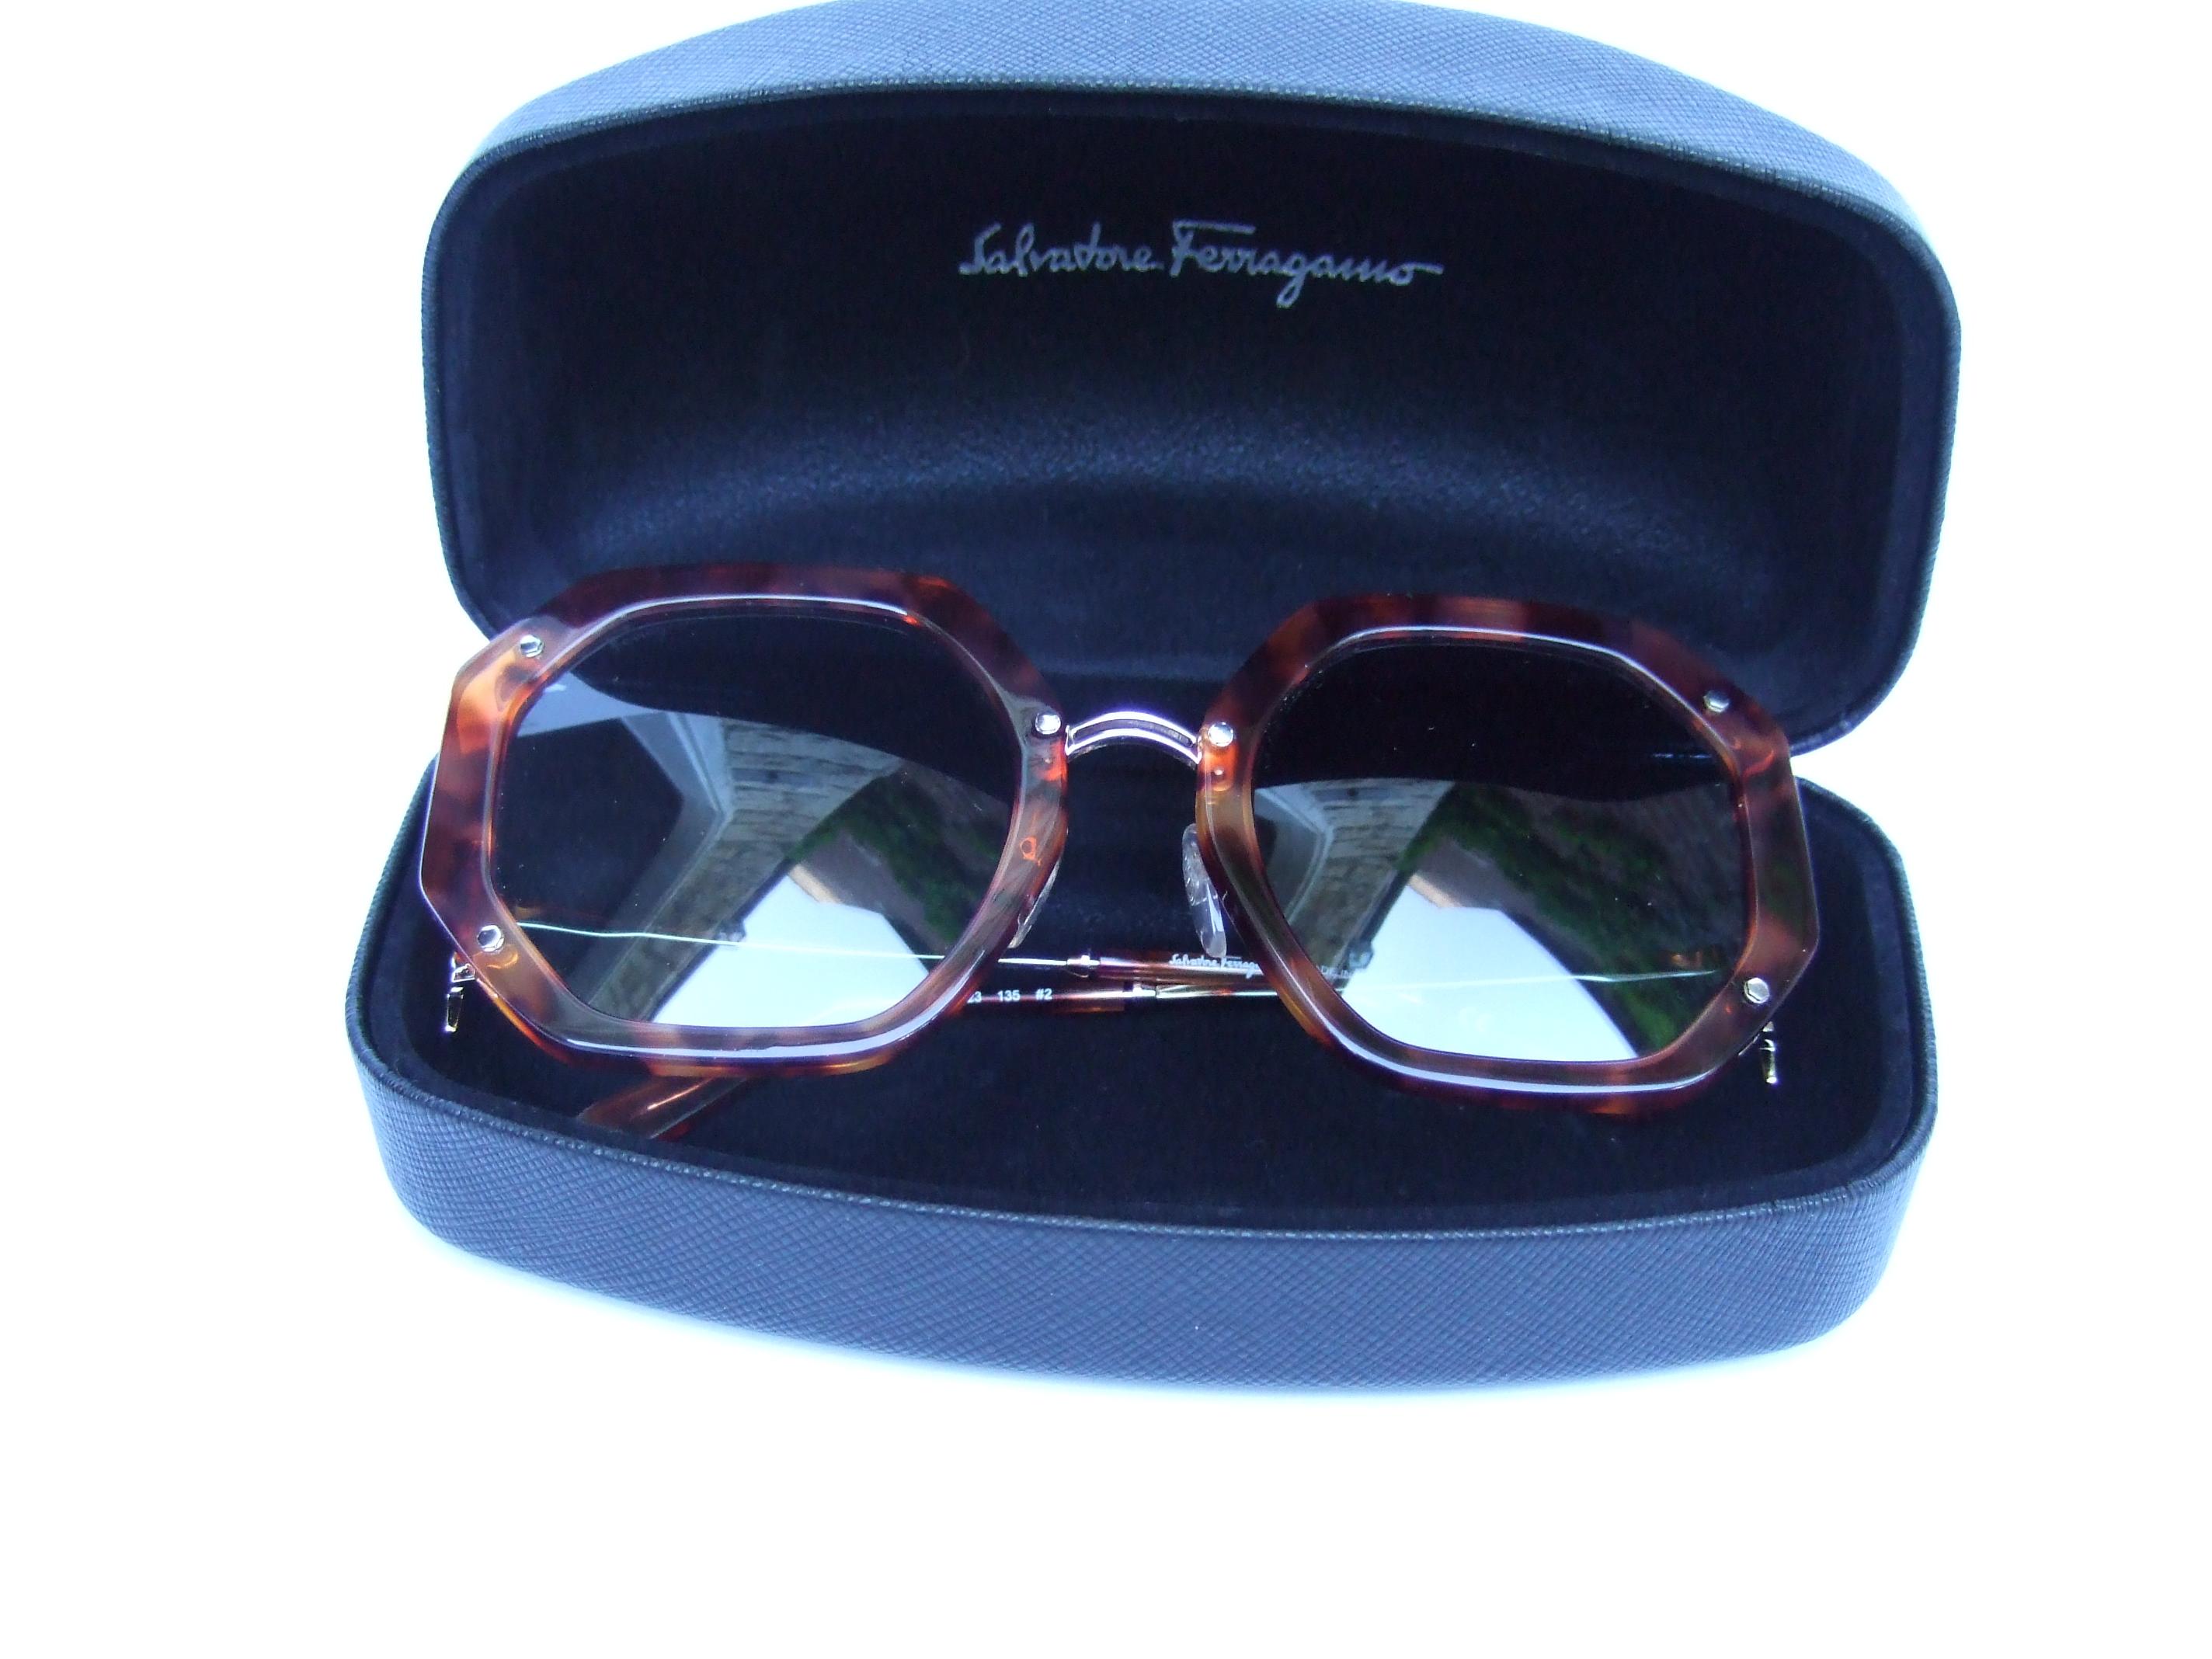 Salvatore Ferragamo Italian Women's Tortoise Shell Sunglasses in Box c 21st c  For Sale 6